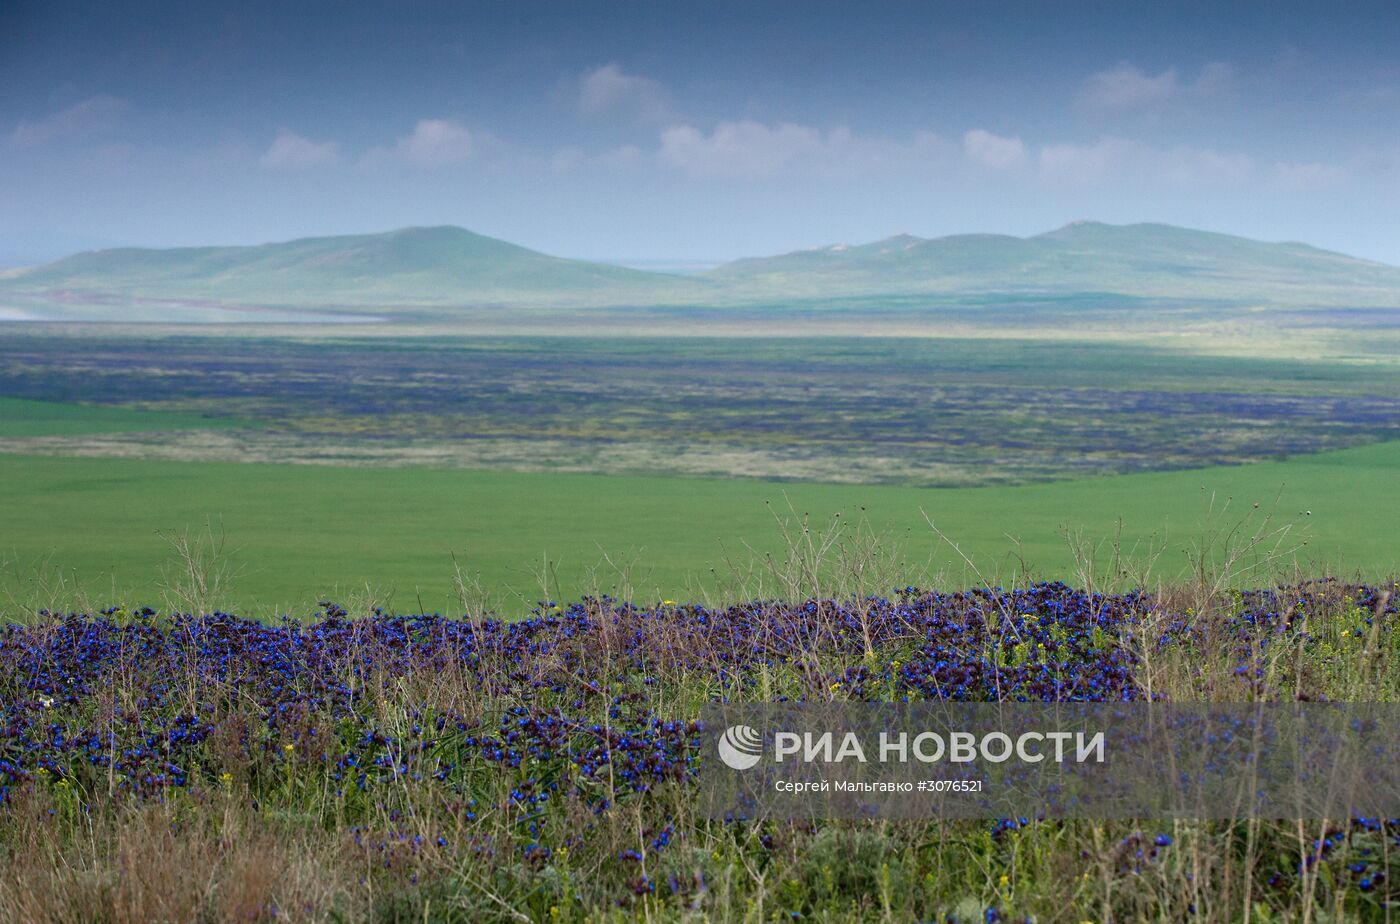 Опукский природный заповедник в Крыму